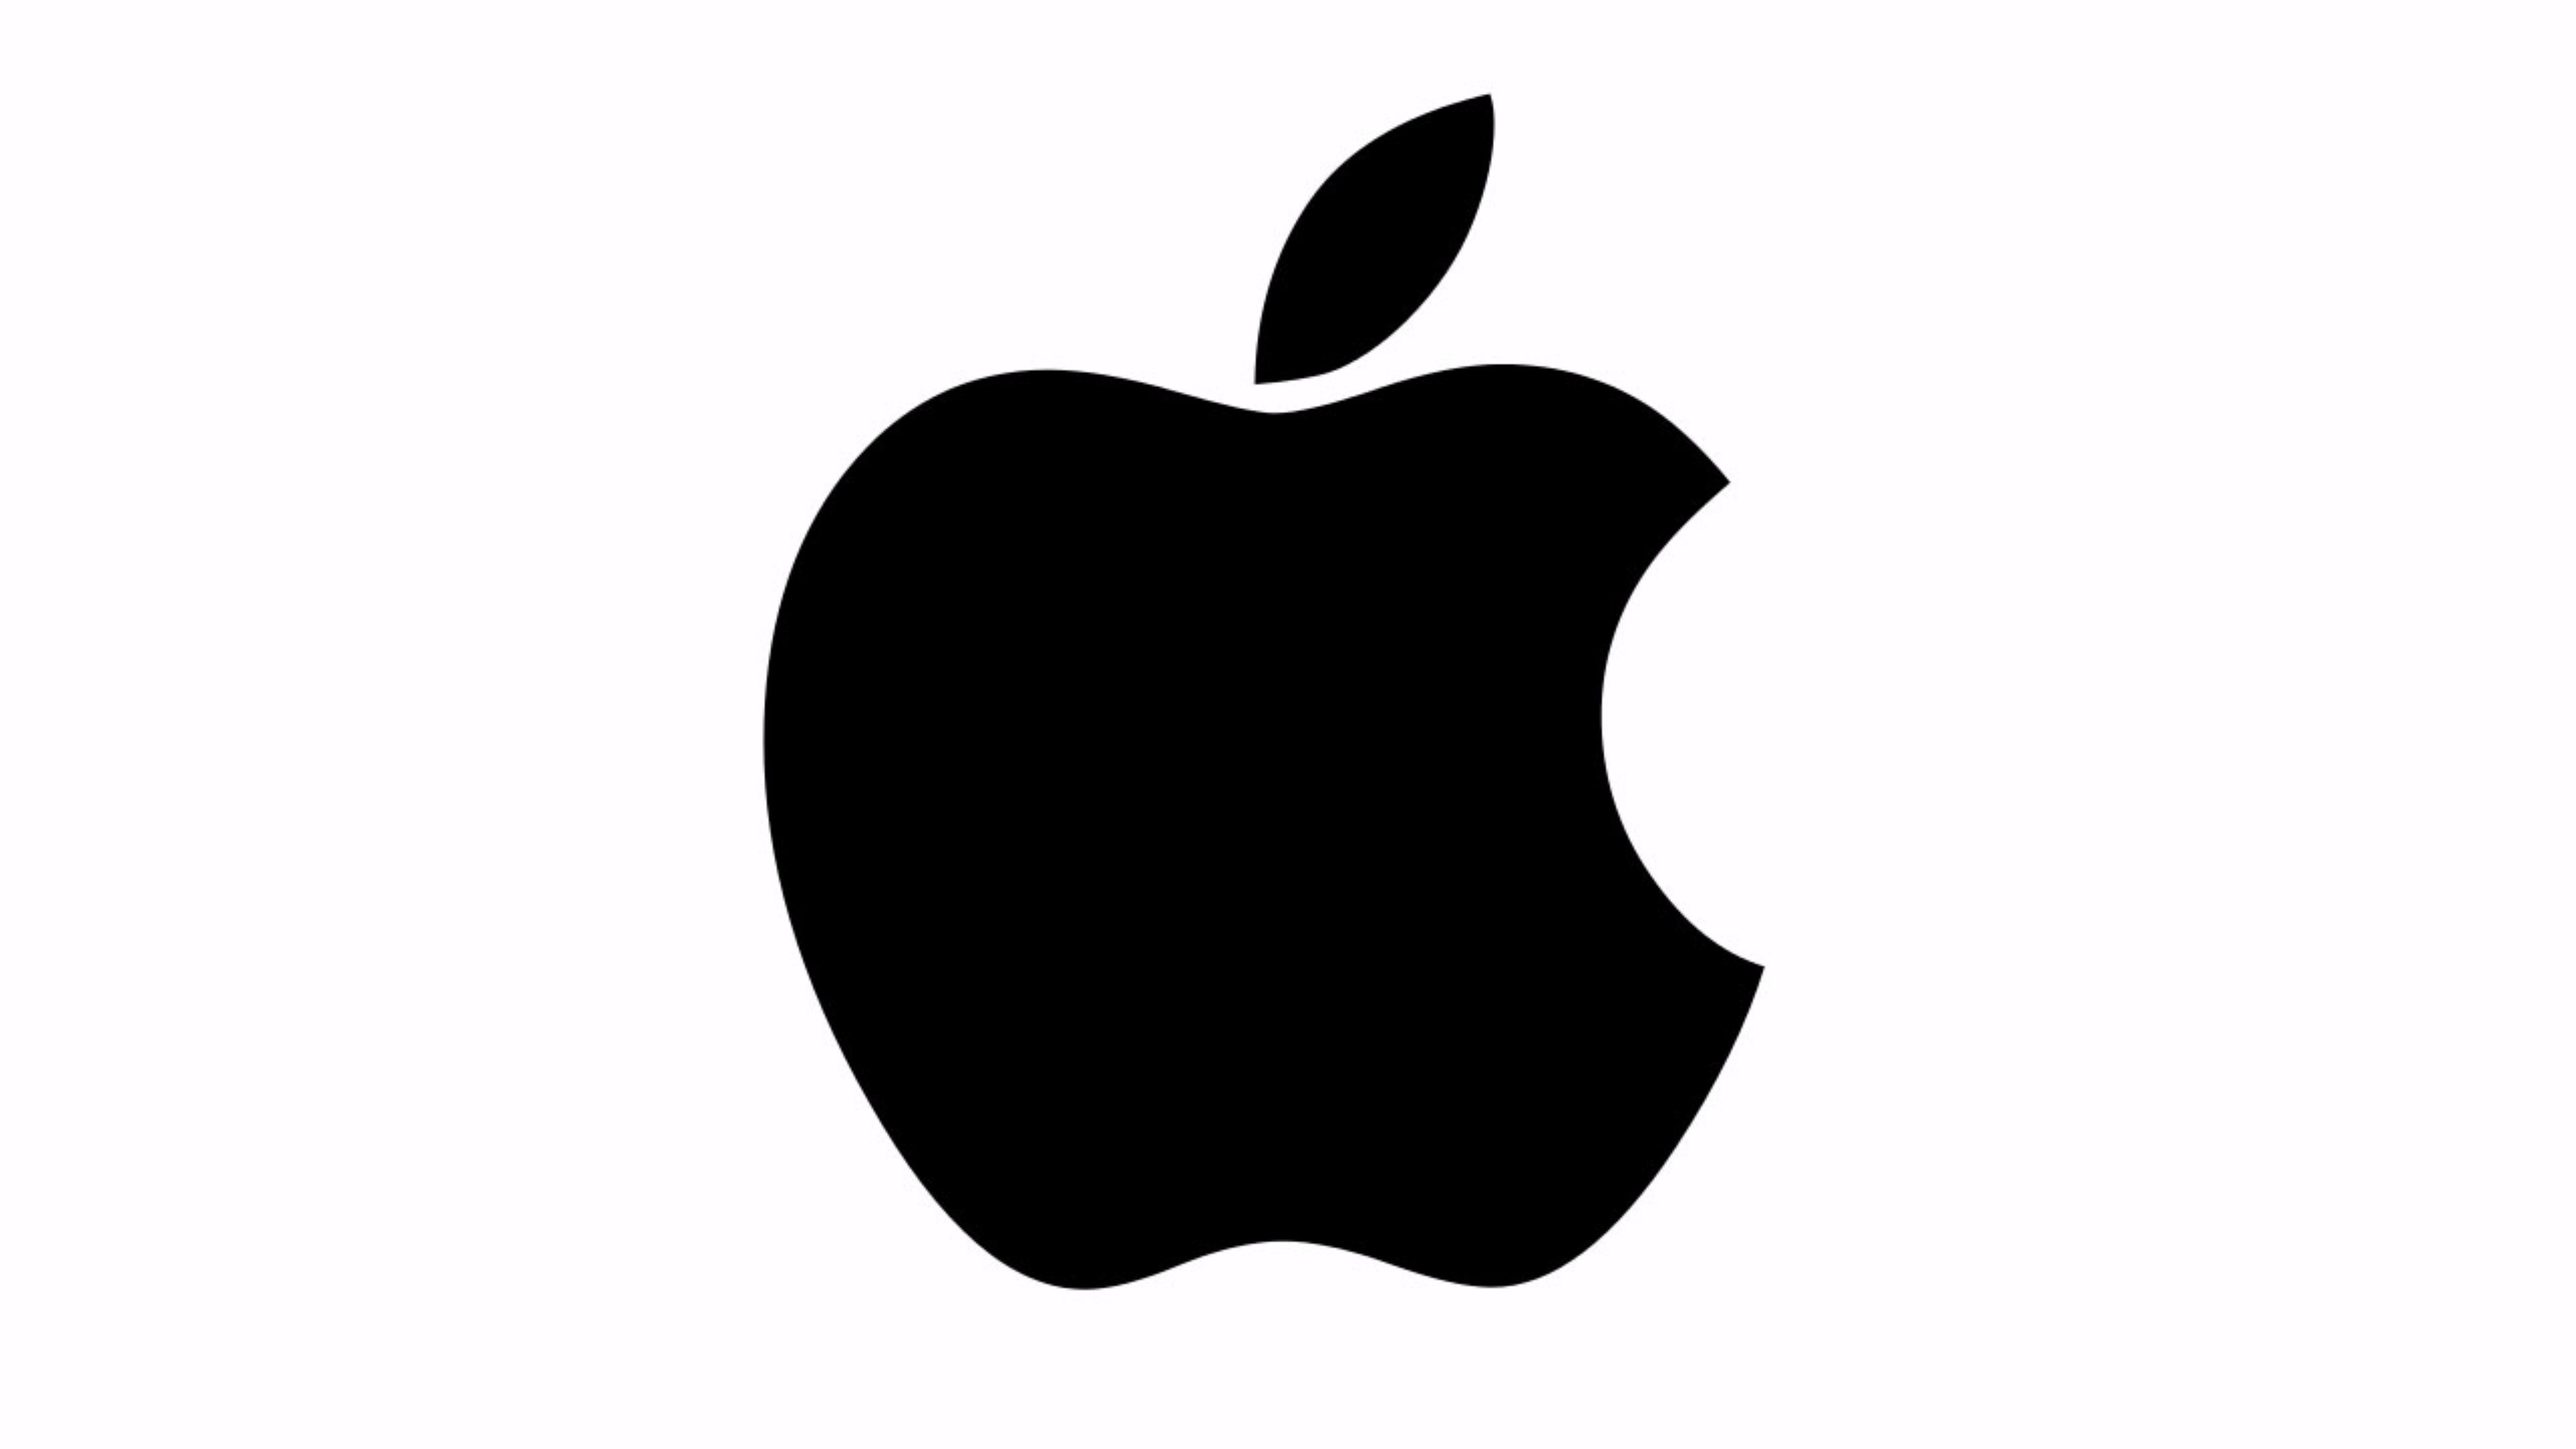 Black and White Apple Logo 4K Wallpaper | Free 4K Wallpaper